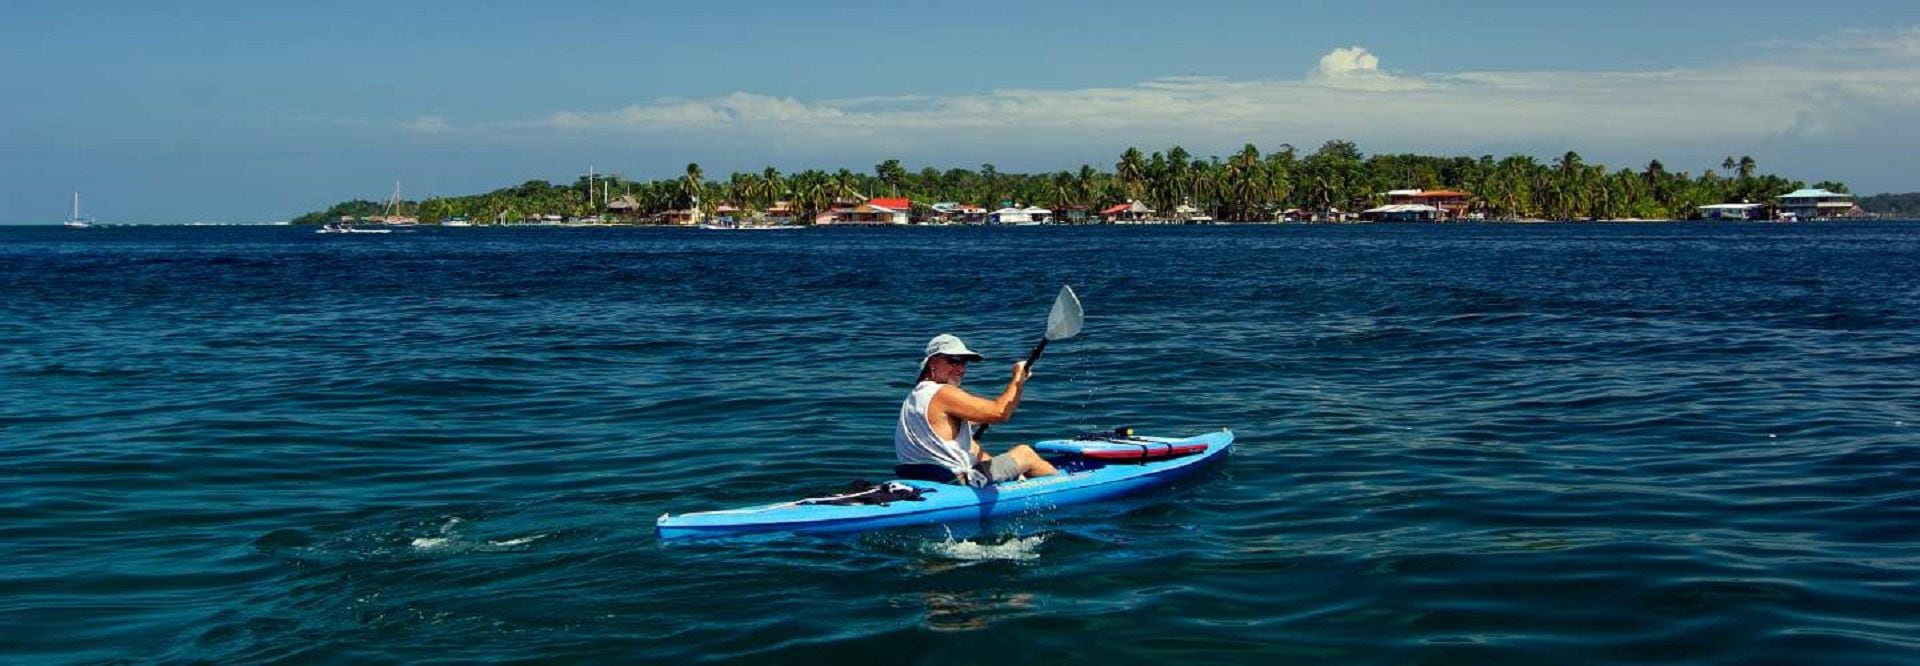 El ambiente marino de Bocas del Toro es único y enfrenta muchas amenazas: niveles altos de nutrientes en el agua provenientes de las plantaciones de banana, suba de la temperatura del agua y sobrepesca (gentileza Bocas del Toro Turismo)